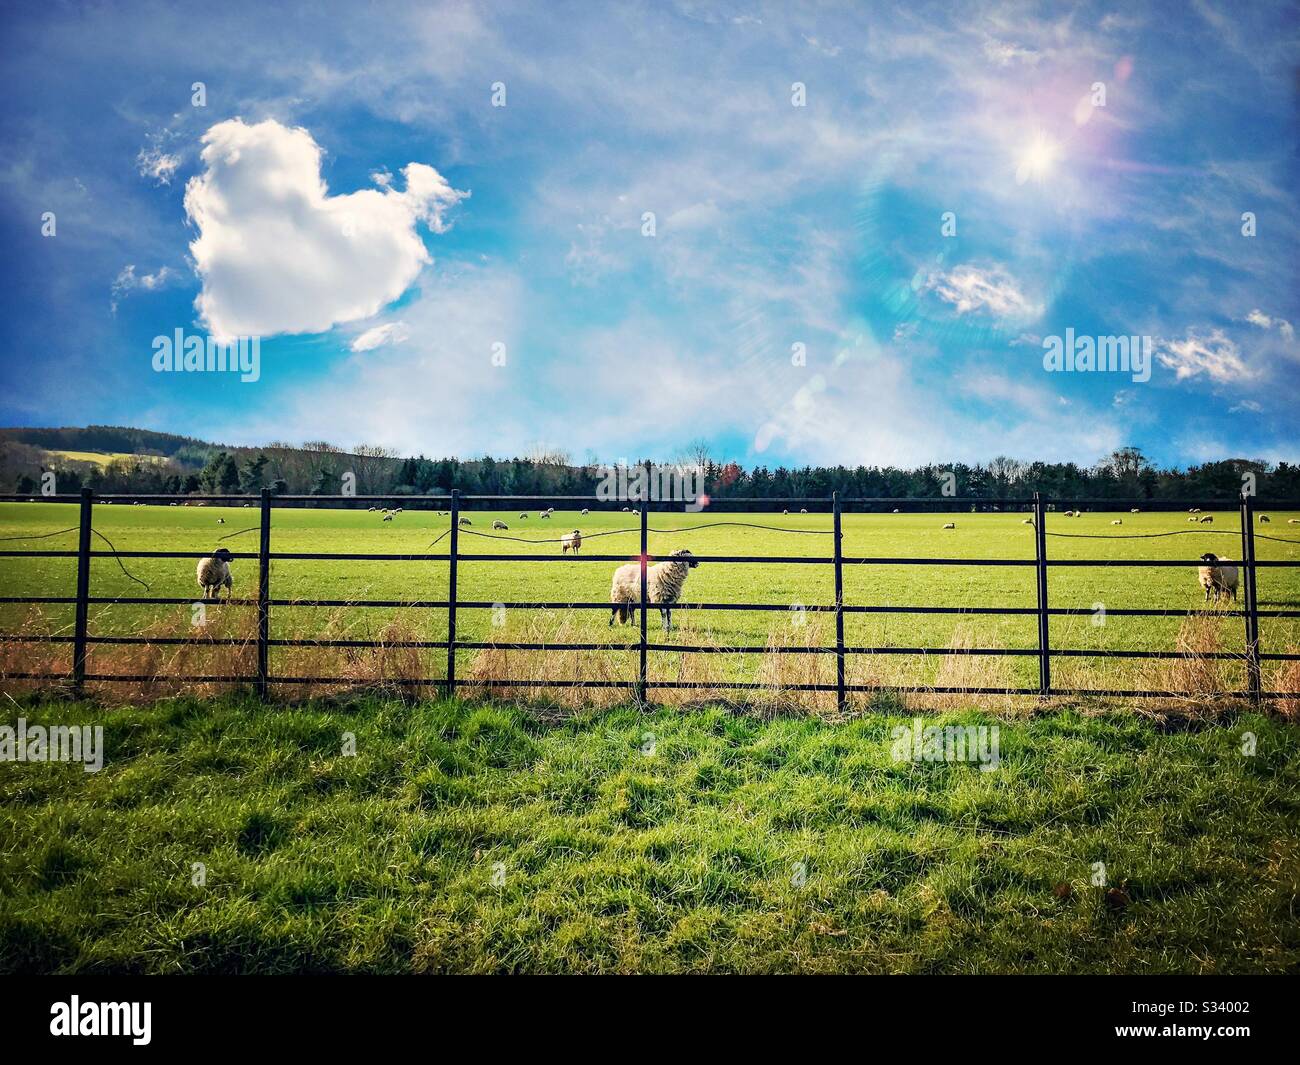 Nubes en forma de corazón sobre ovejas pastando un campo verde de la granja es verano con lentes de colores y los árboles en la distancia Foto de stock